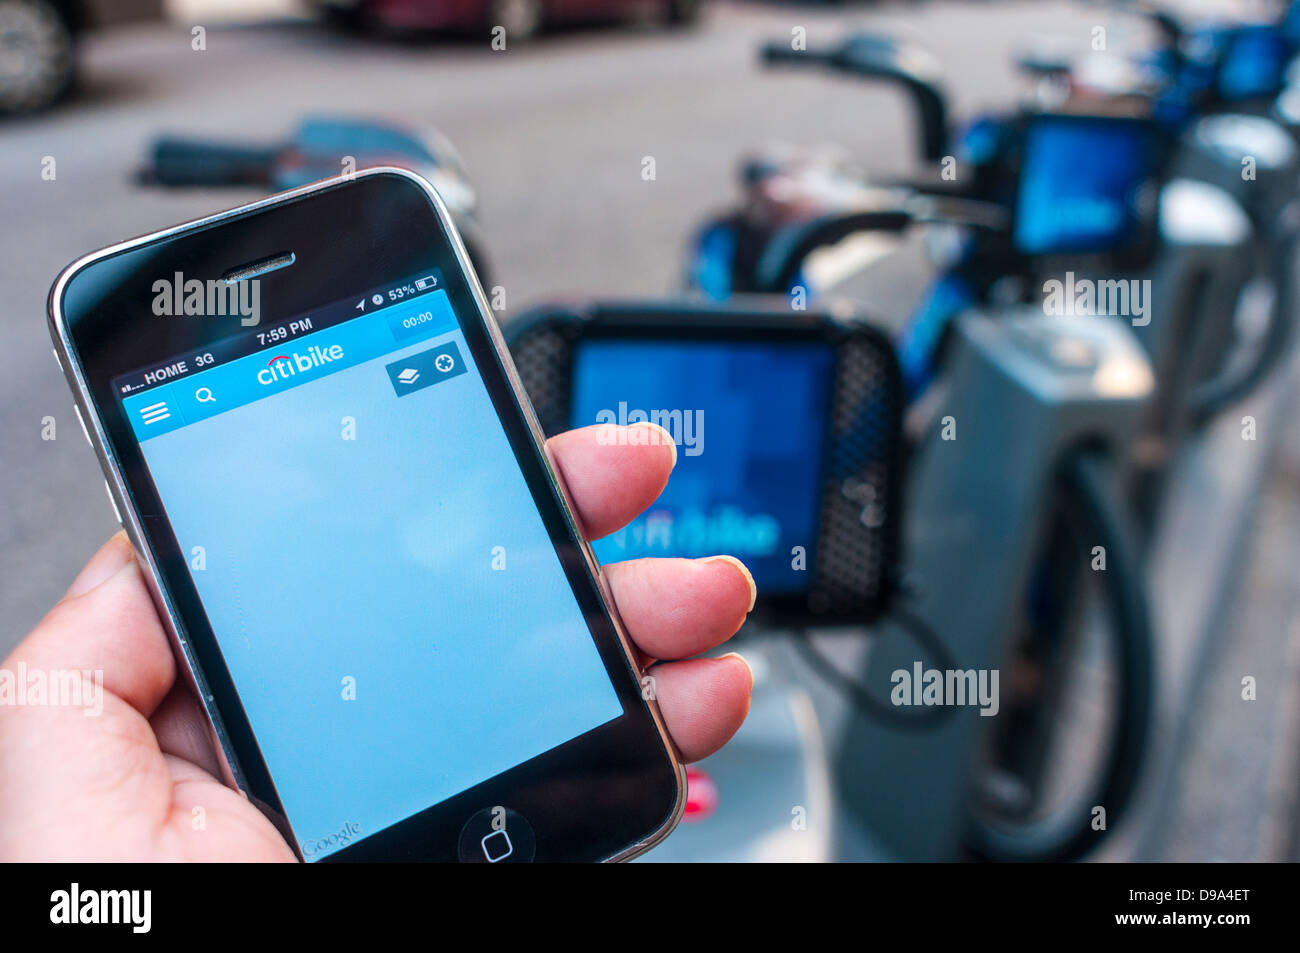 CitBike bike share app ne parvient pas à trouver l'emplacement. Banque D'Images